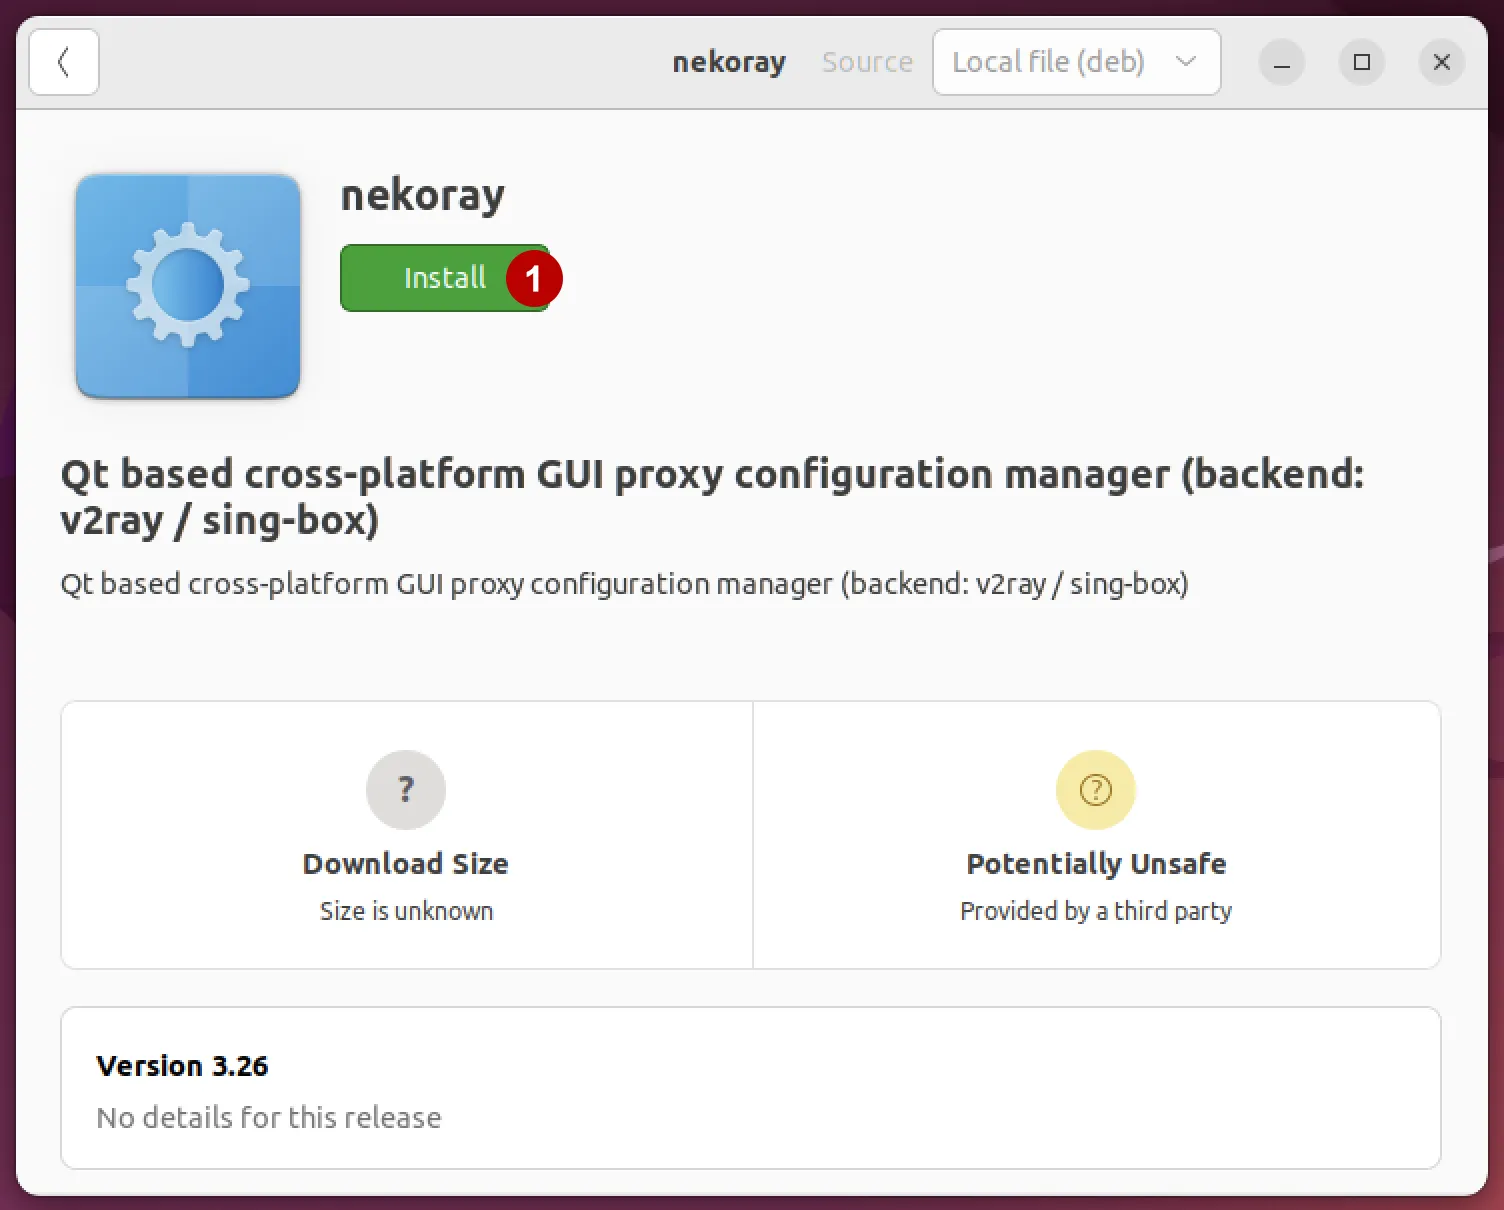 Allow installation of Nekoray on Ubuntu 22